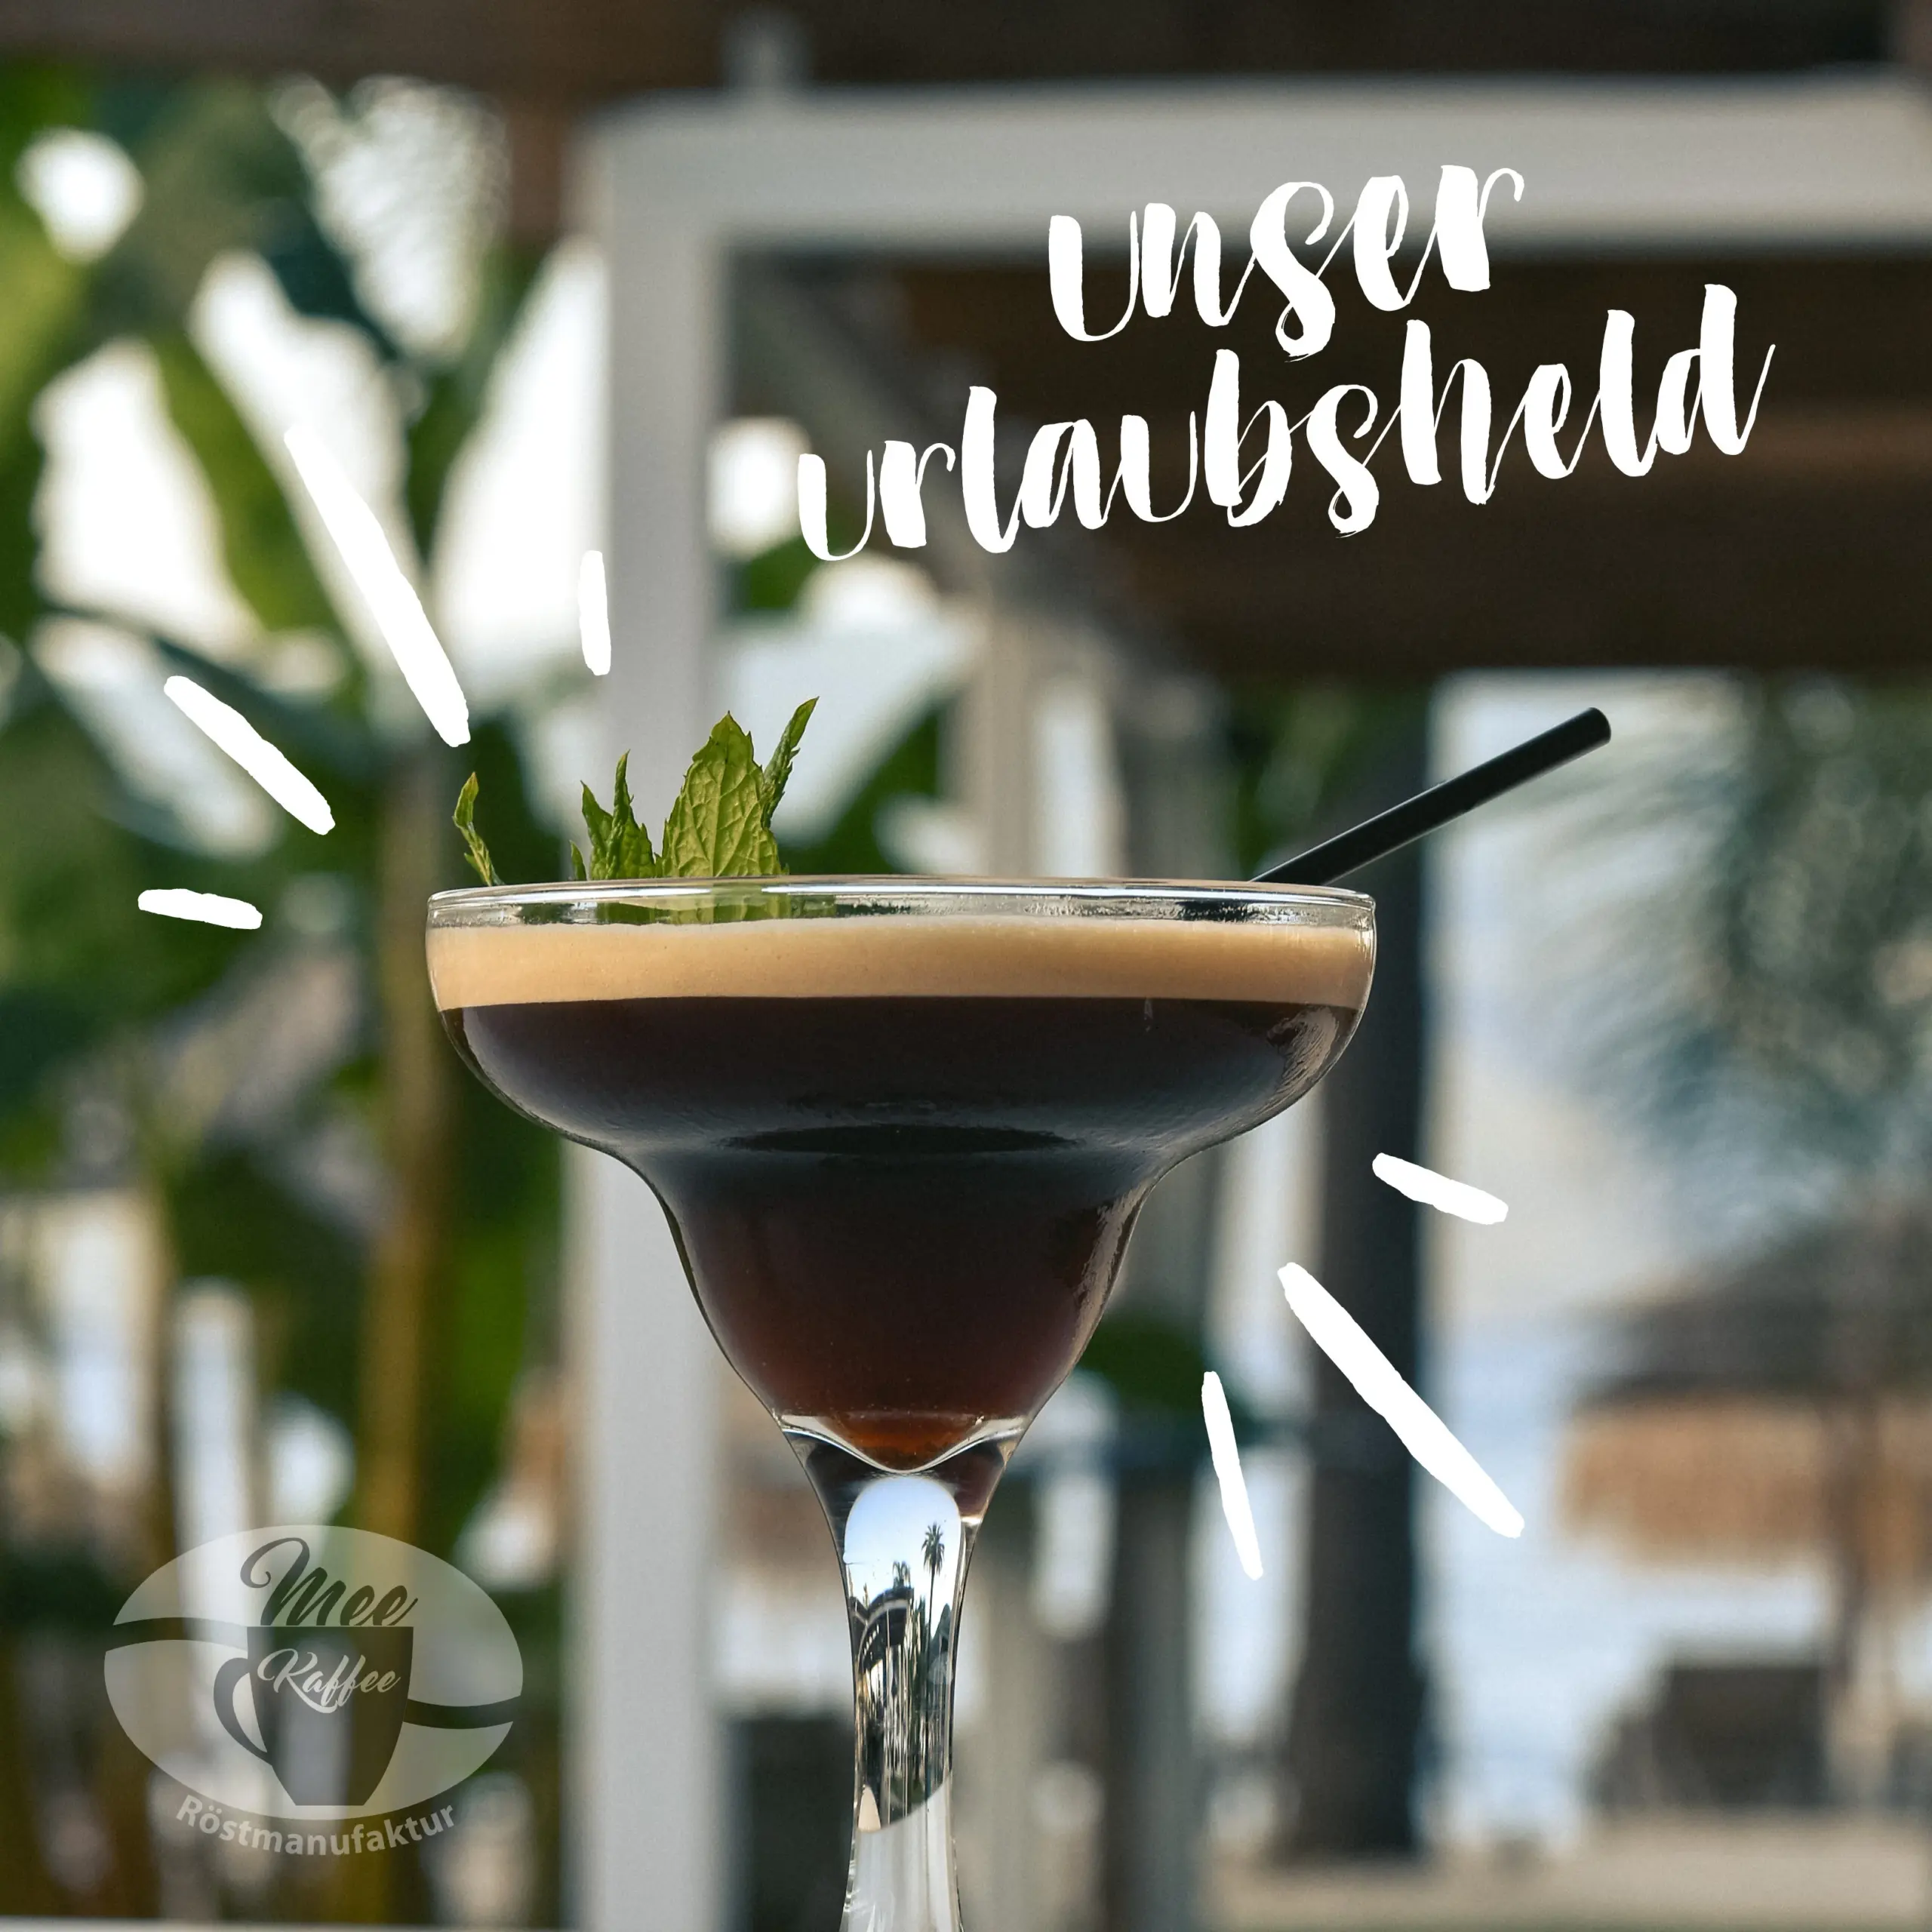 Espresso-Martini ist unser Urlaubsheld. Abbildung eines Martini mit leckerem Kaffeegeschmack.